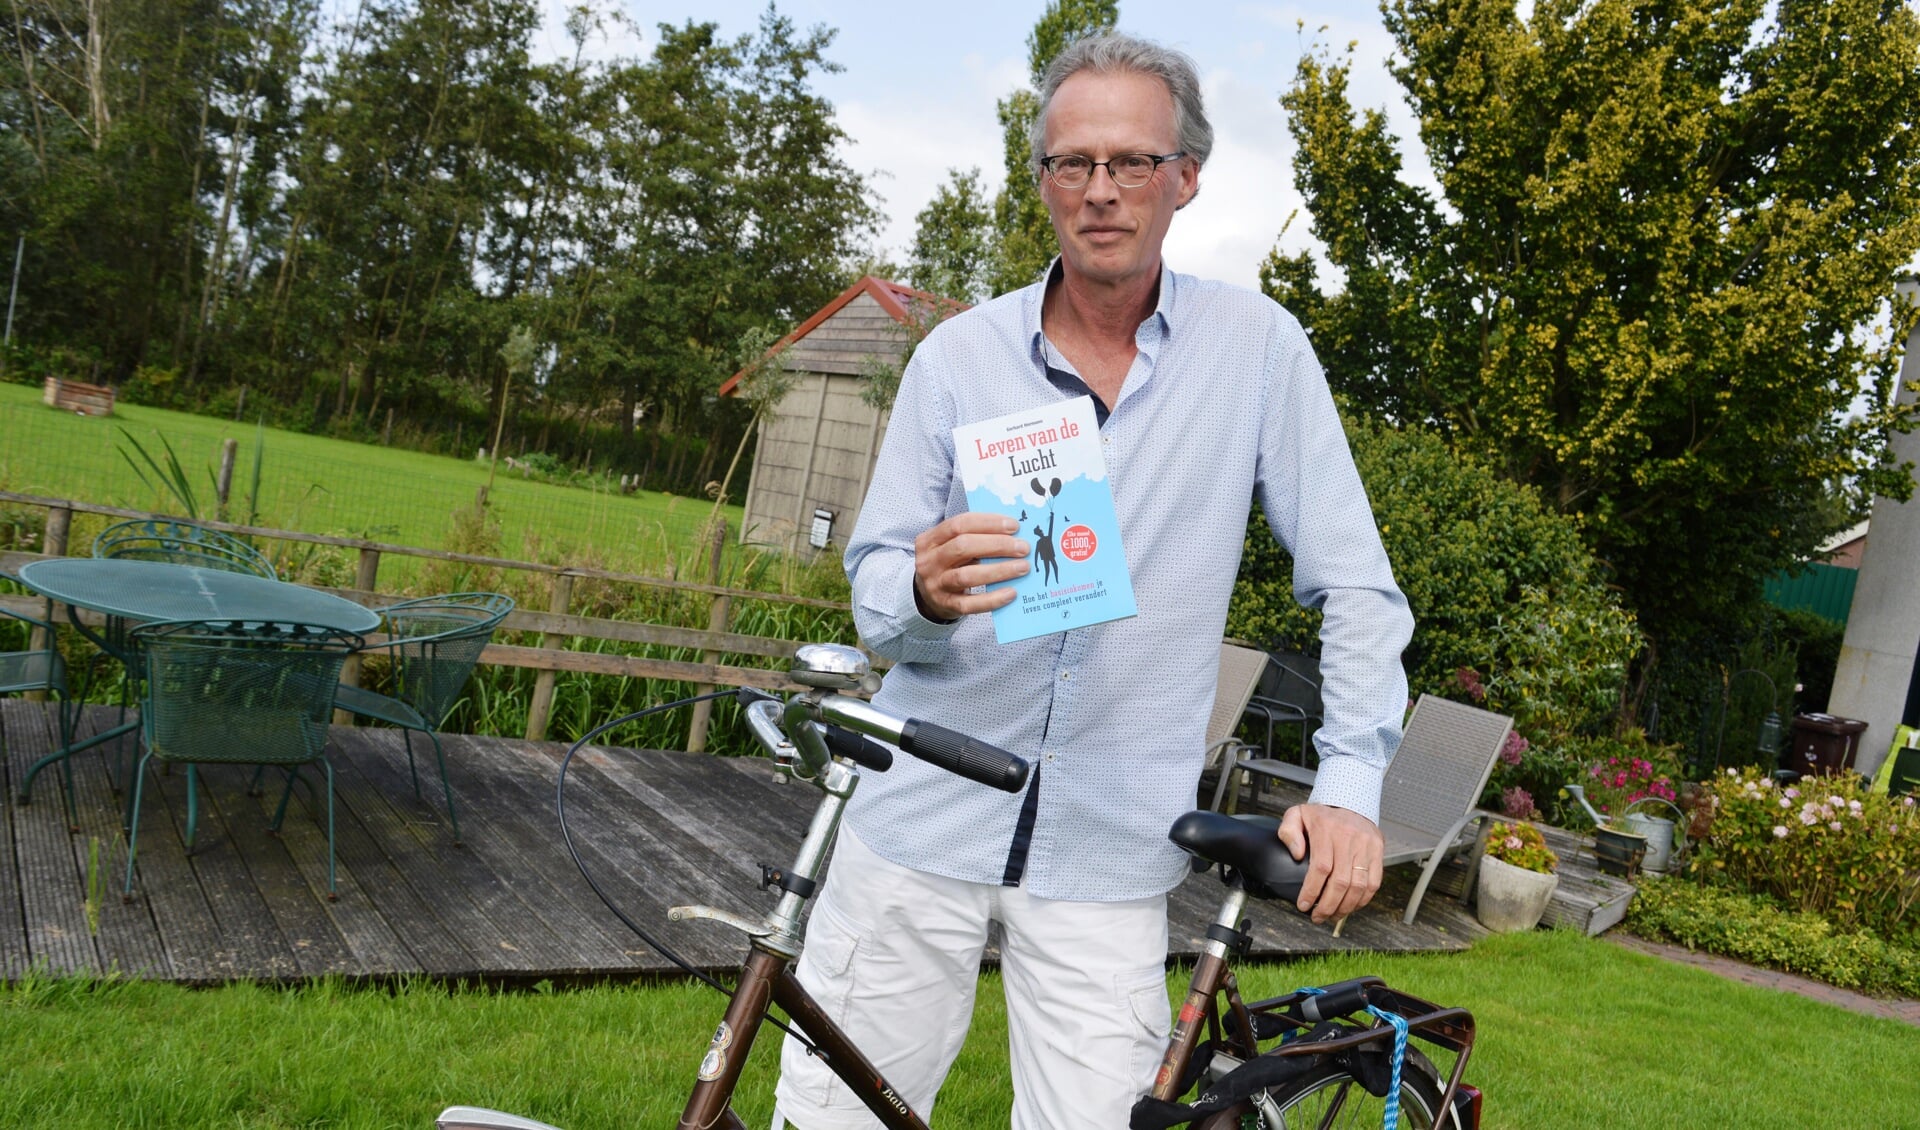 Gerhard Hormann gaat er graag met zijn oude fiets op uit